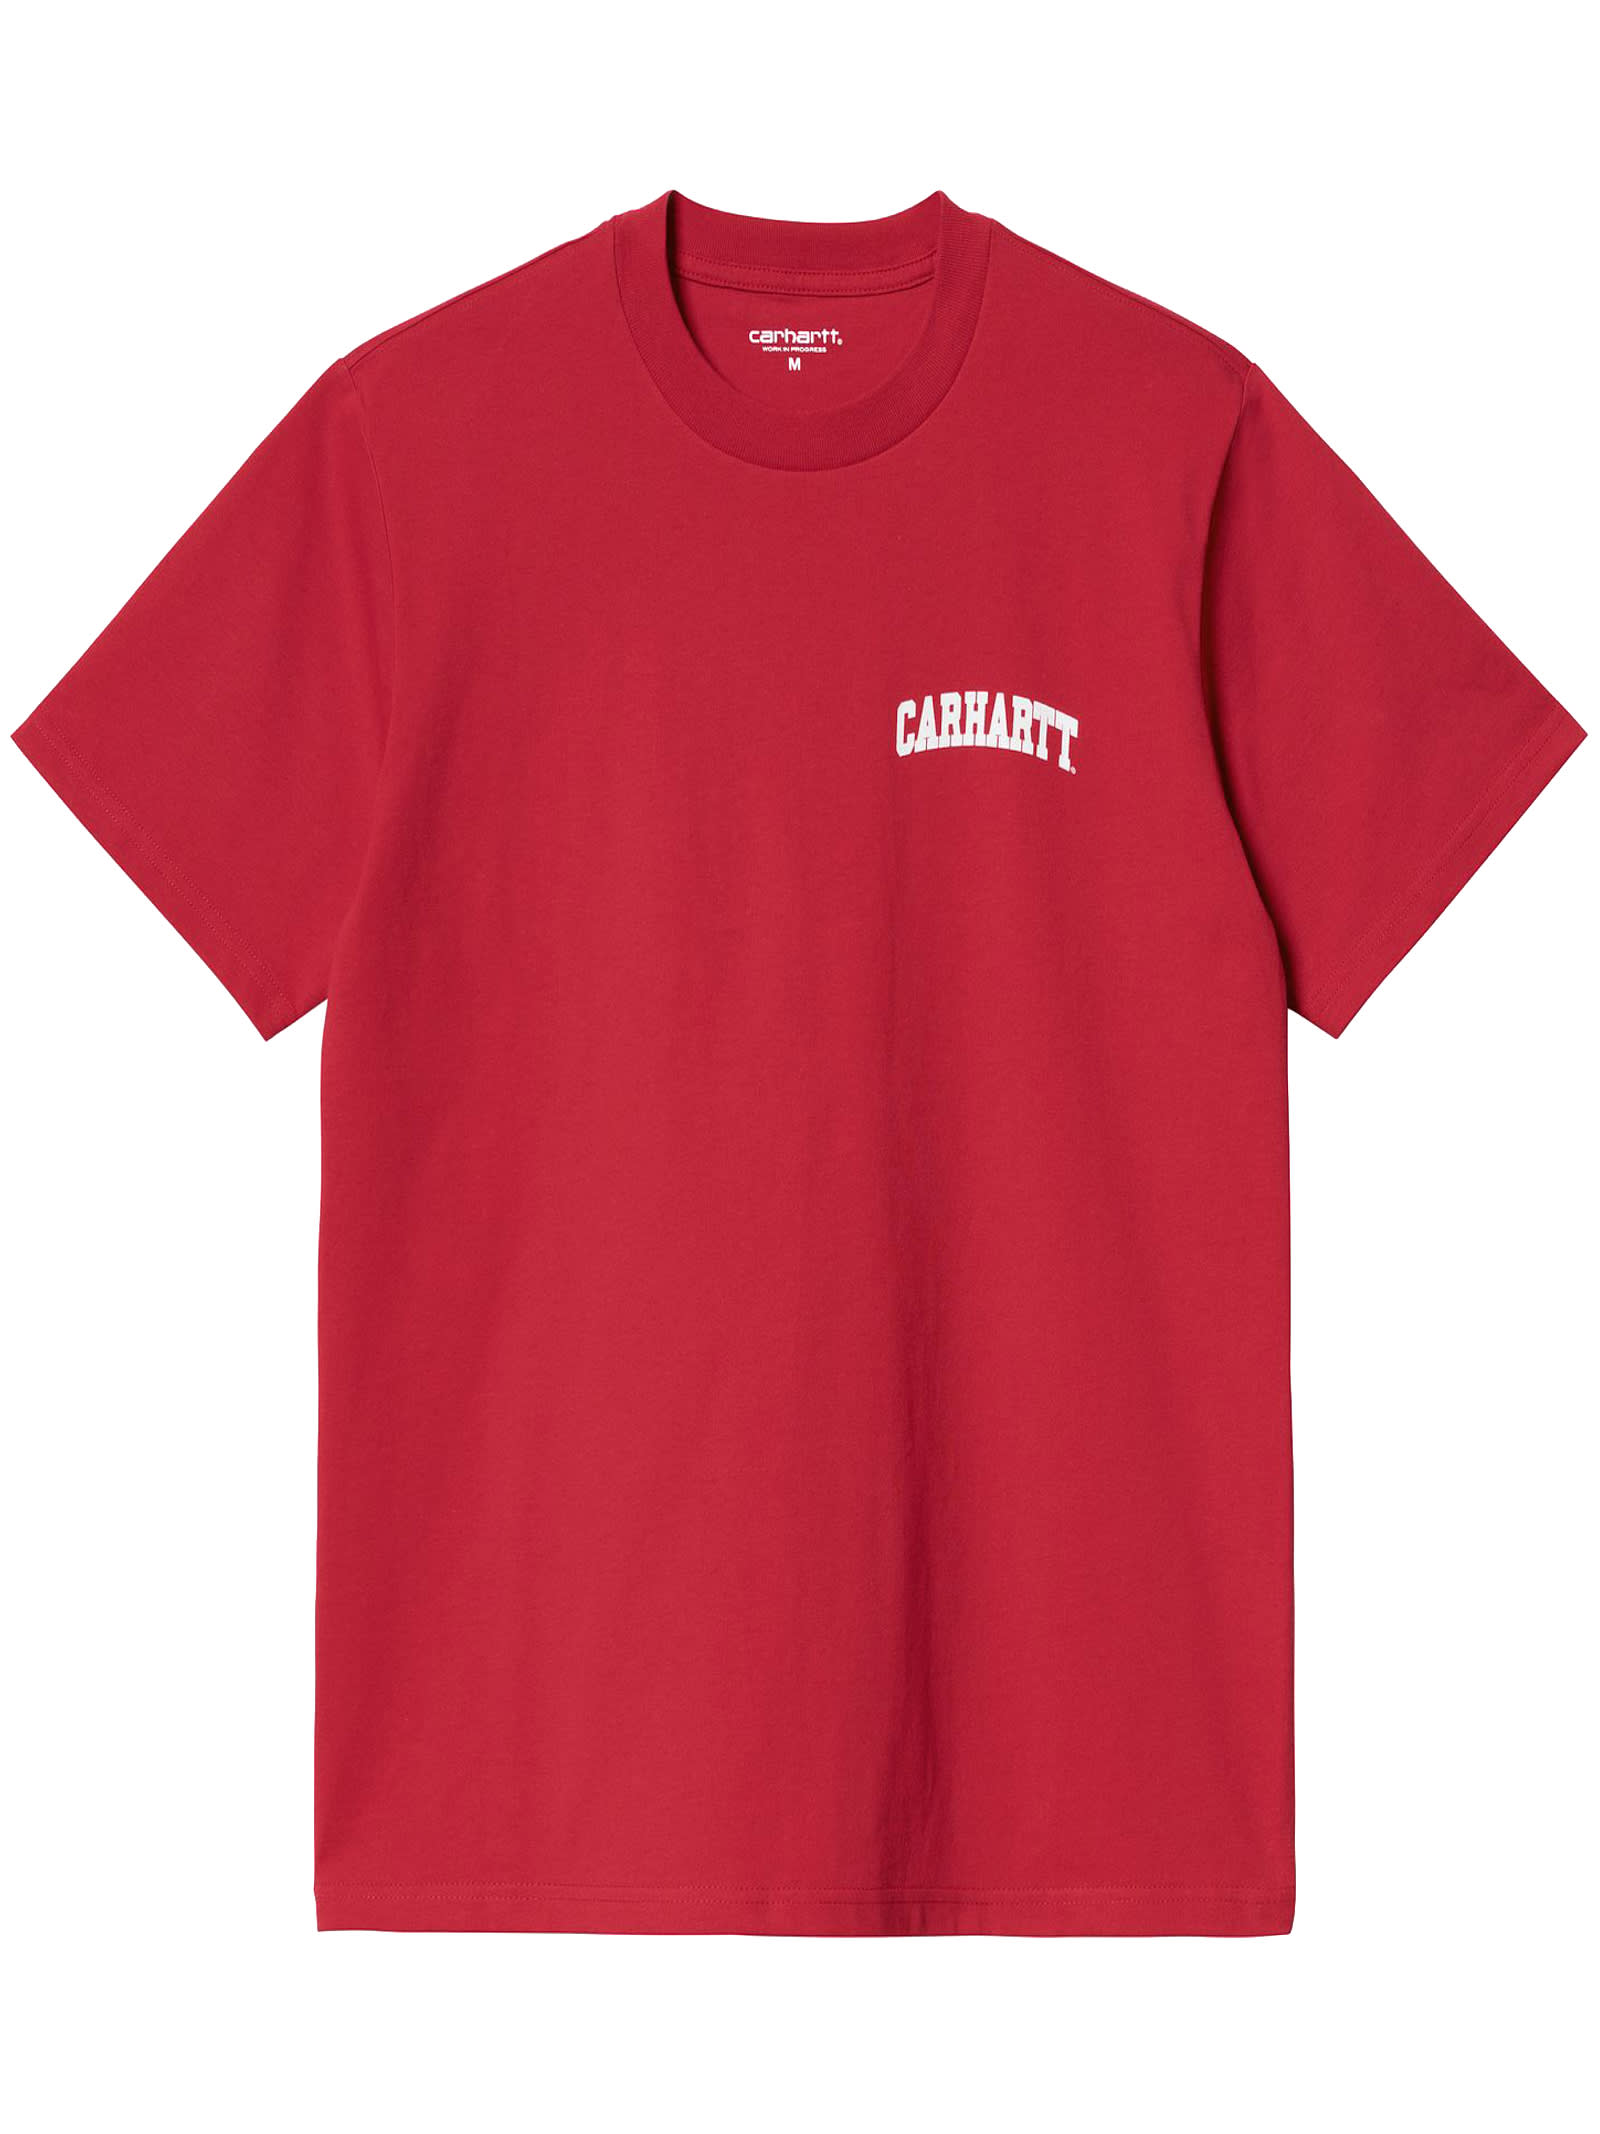 Carhartt Red Cotton T-shirt